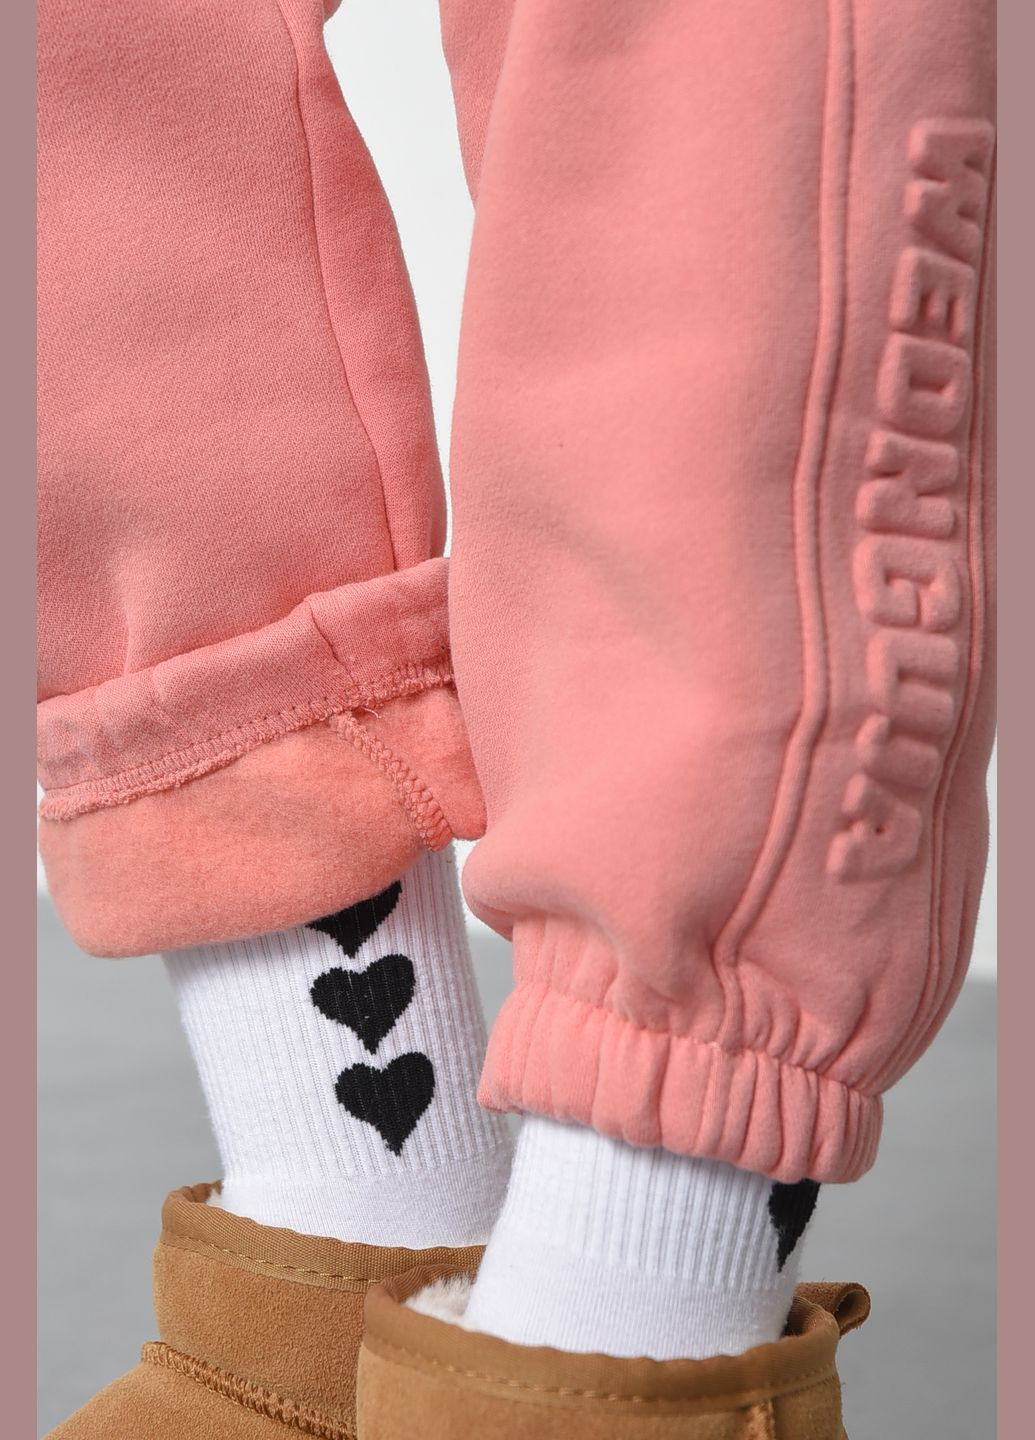 Спортивные штаны женские на флисе персикового цвета Let's Shop (285779390)